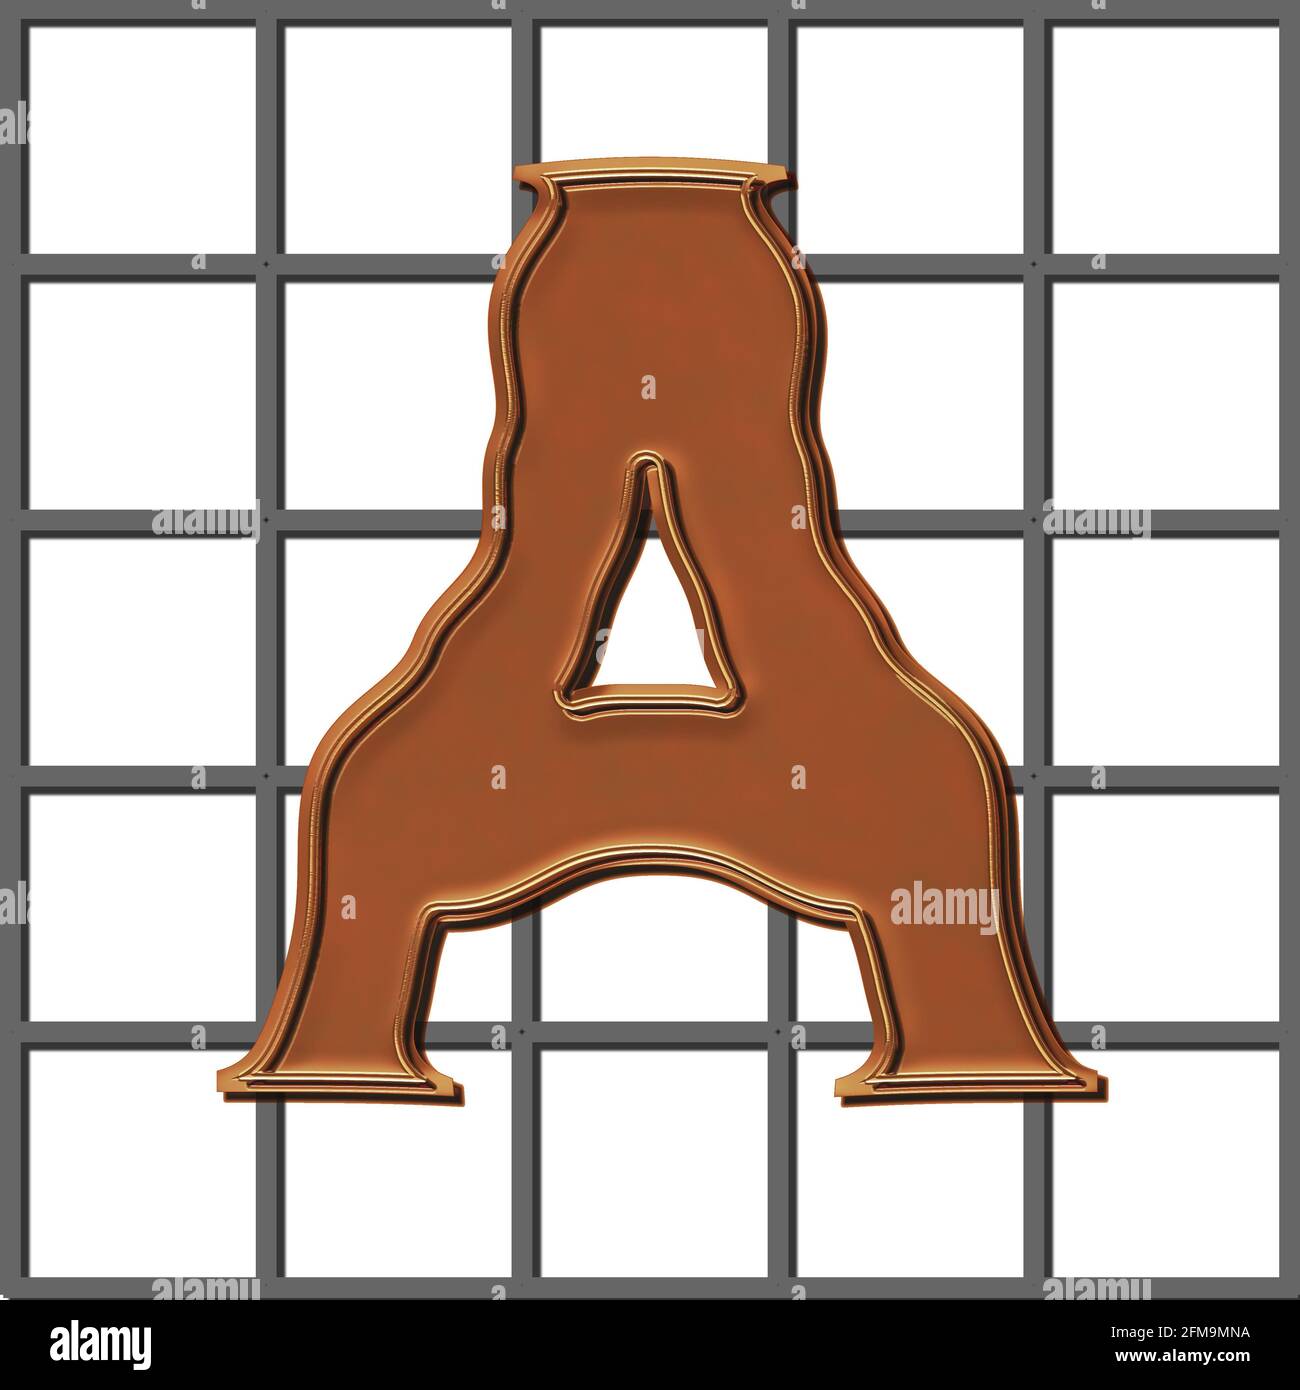 Gráfico cuadrado con el carácter en mayúsculas A de cobre sobre una rejilla de acero Foto de stock